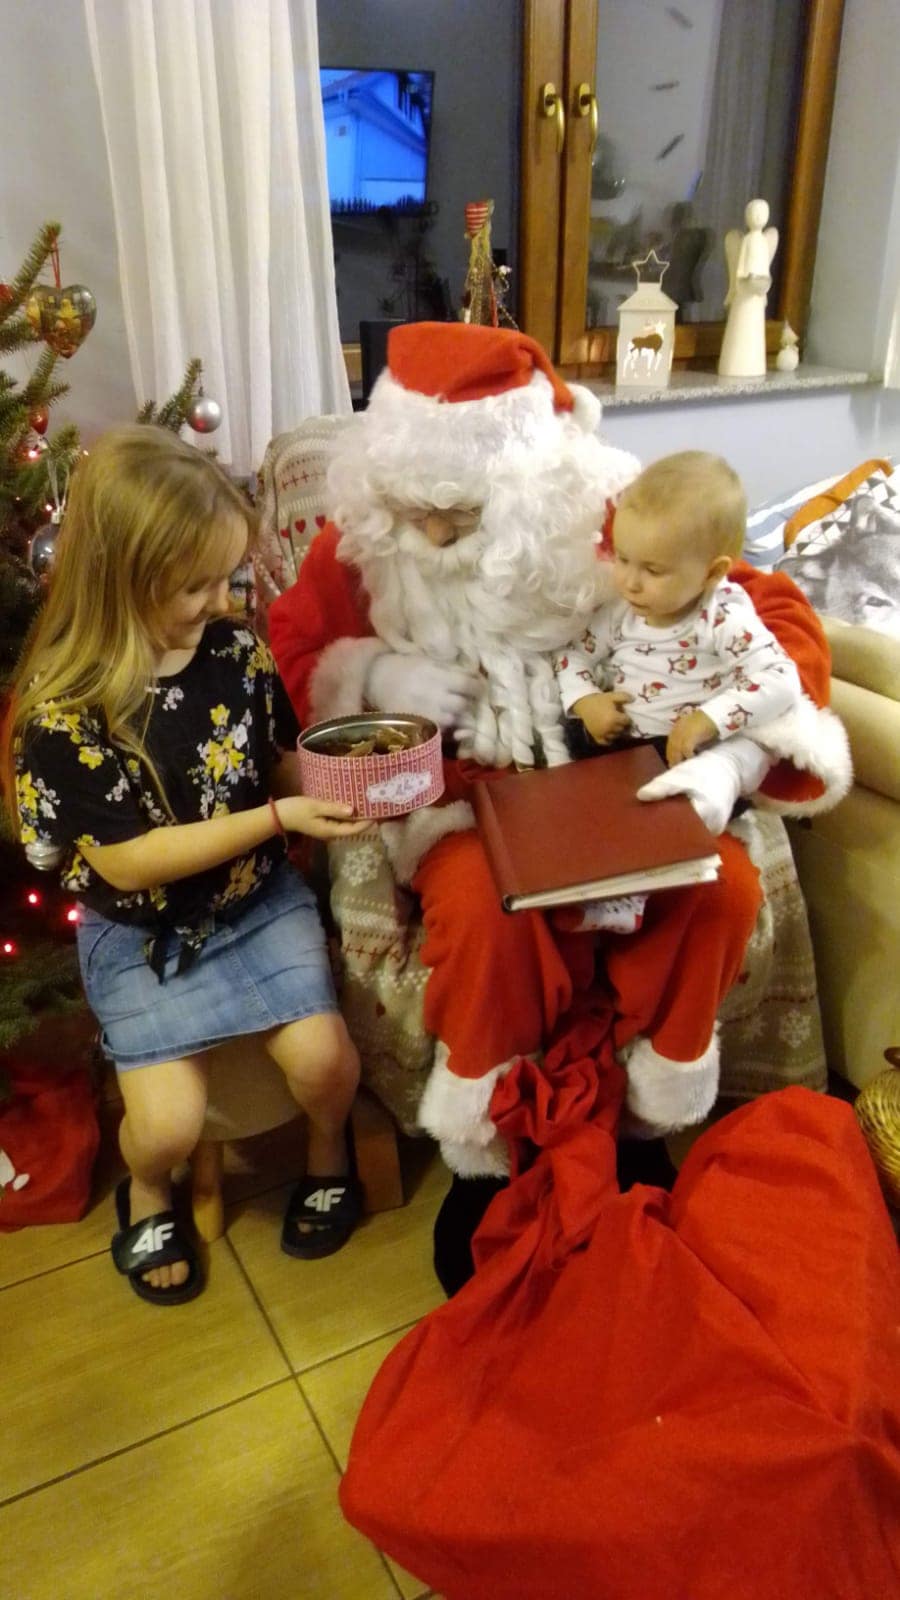 Wizyta Świętego Mikołaja w domu, Mikołaj wręcza prezenty dzieciom.